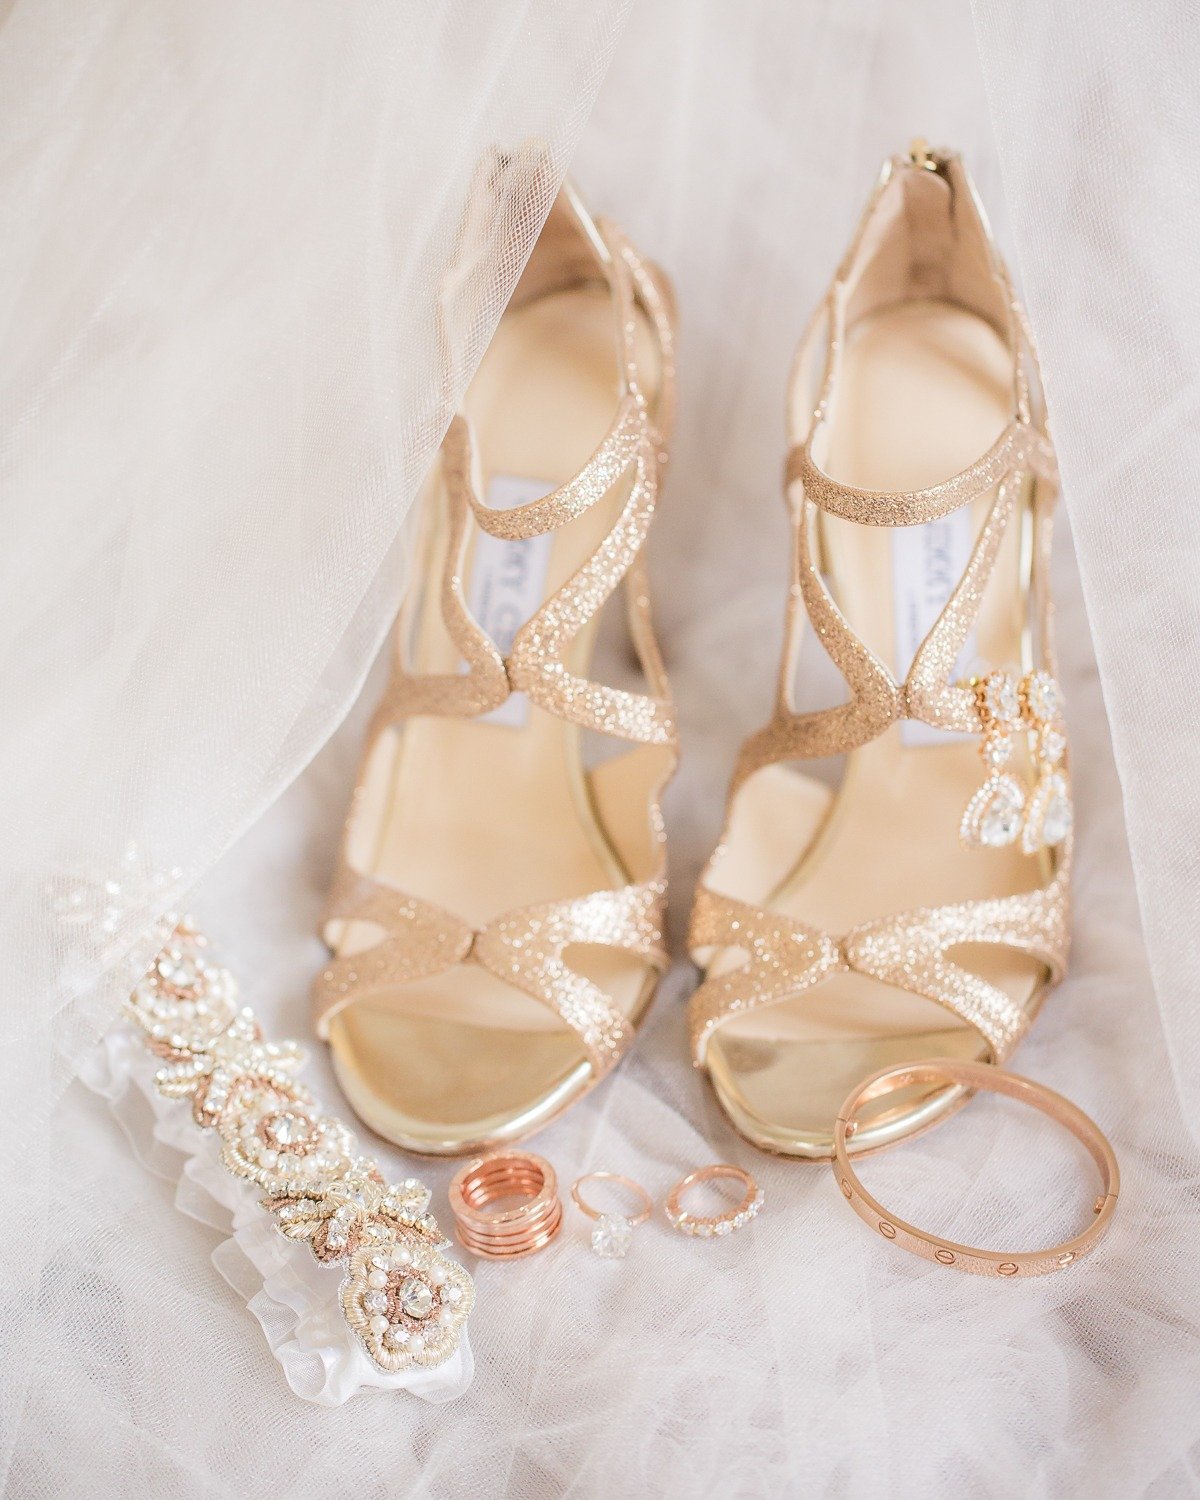 Gold Jimmy Choo wedding heels